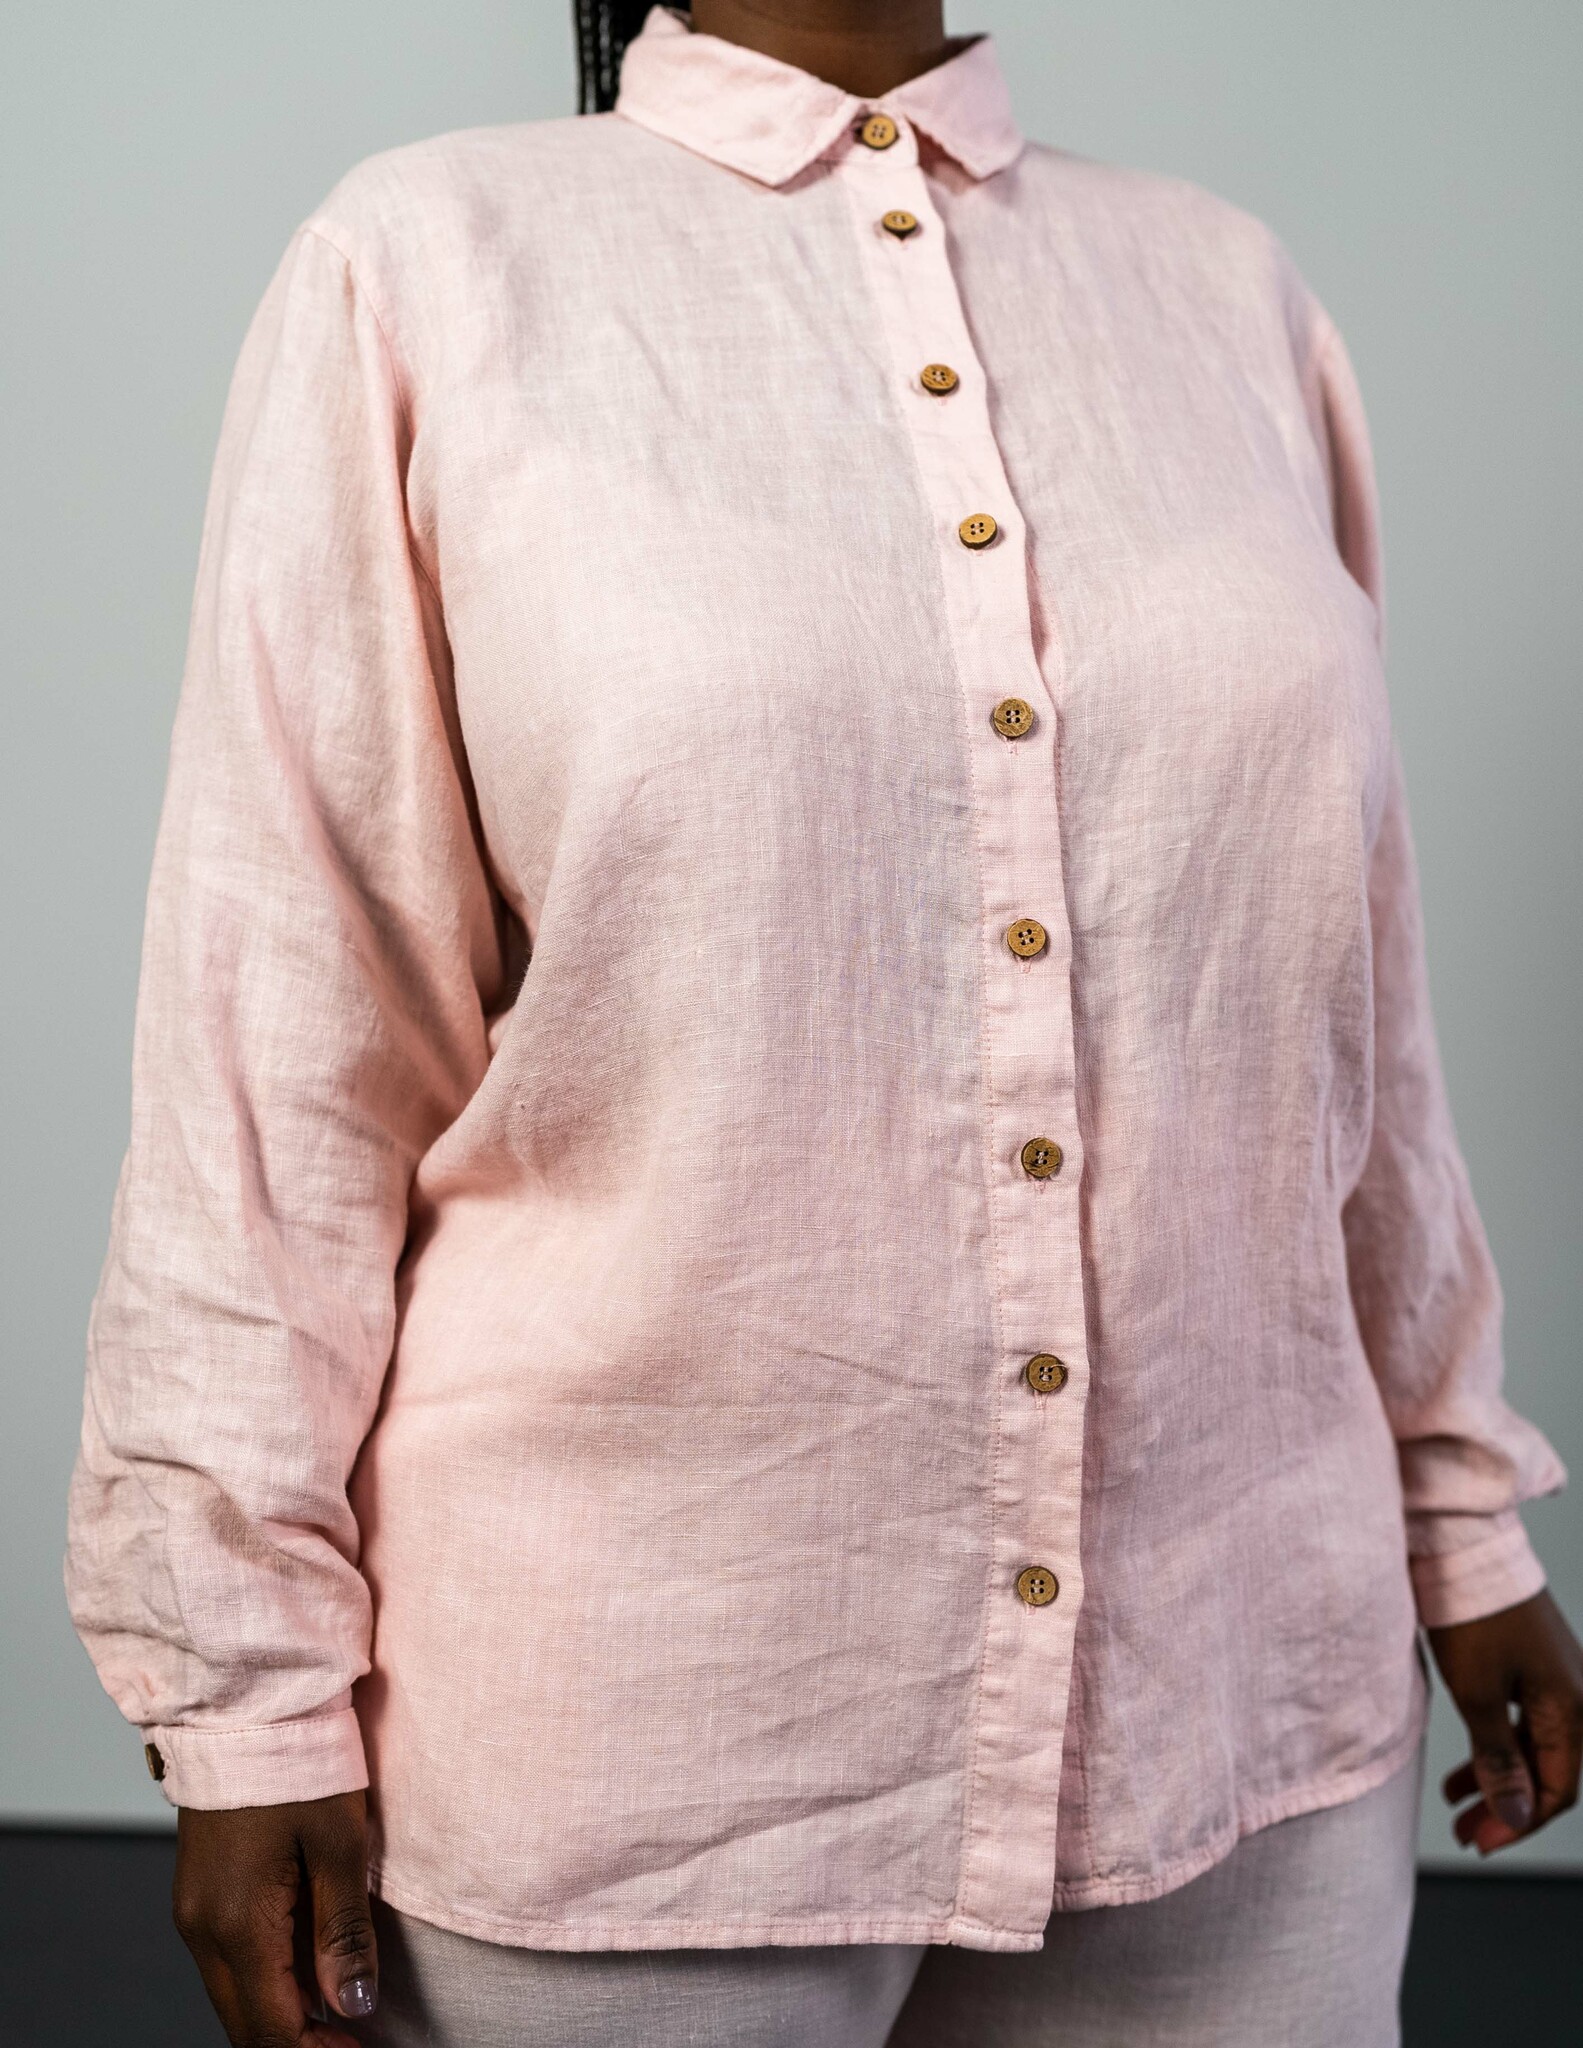 Hållbar linneskjorta rosa I Ljus rosa linneskjorta i hållbart material I Skjorta i linne dam I Linneskjorta med knappar I Ljus rosa linneskjortor dam I Hållbara linnekläder hos SOONA Collection